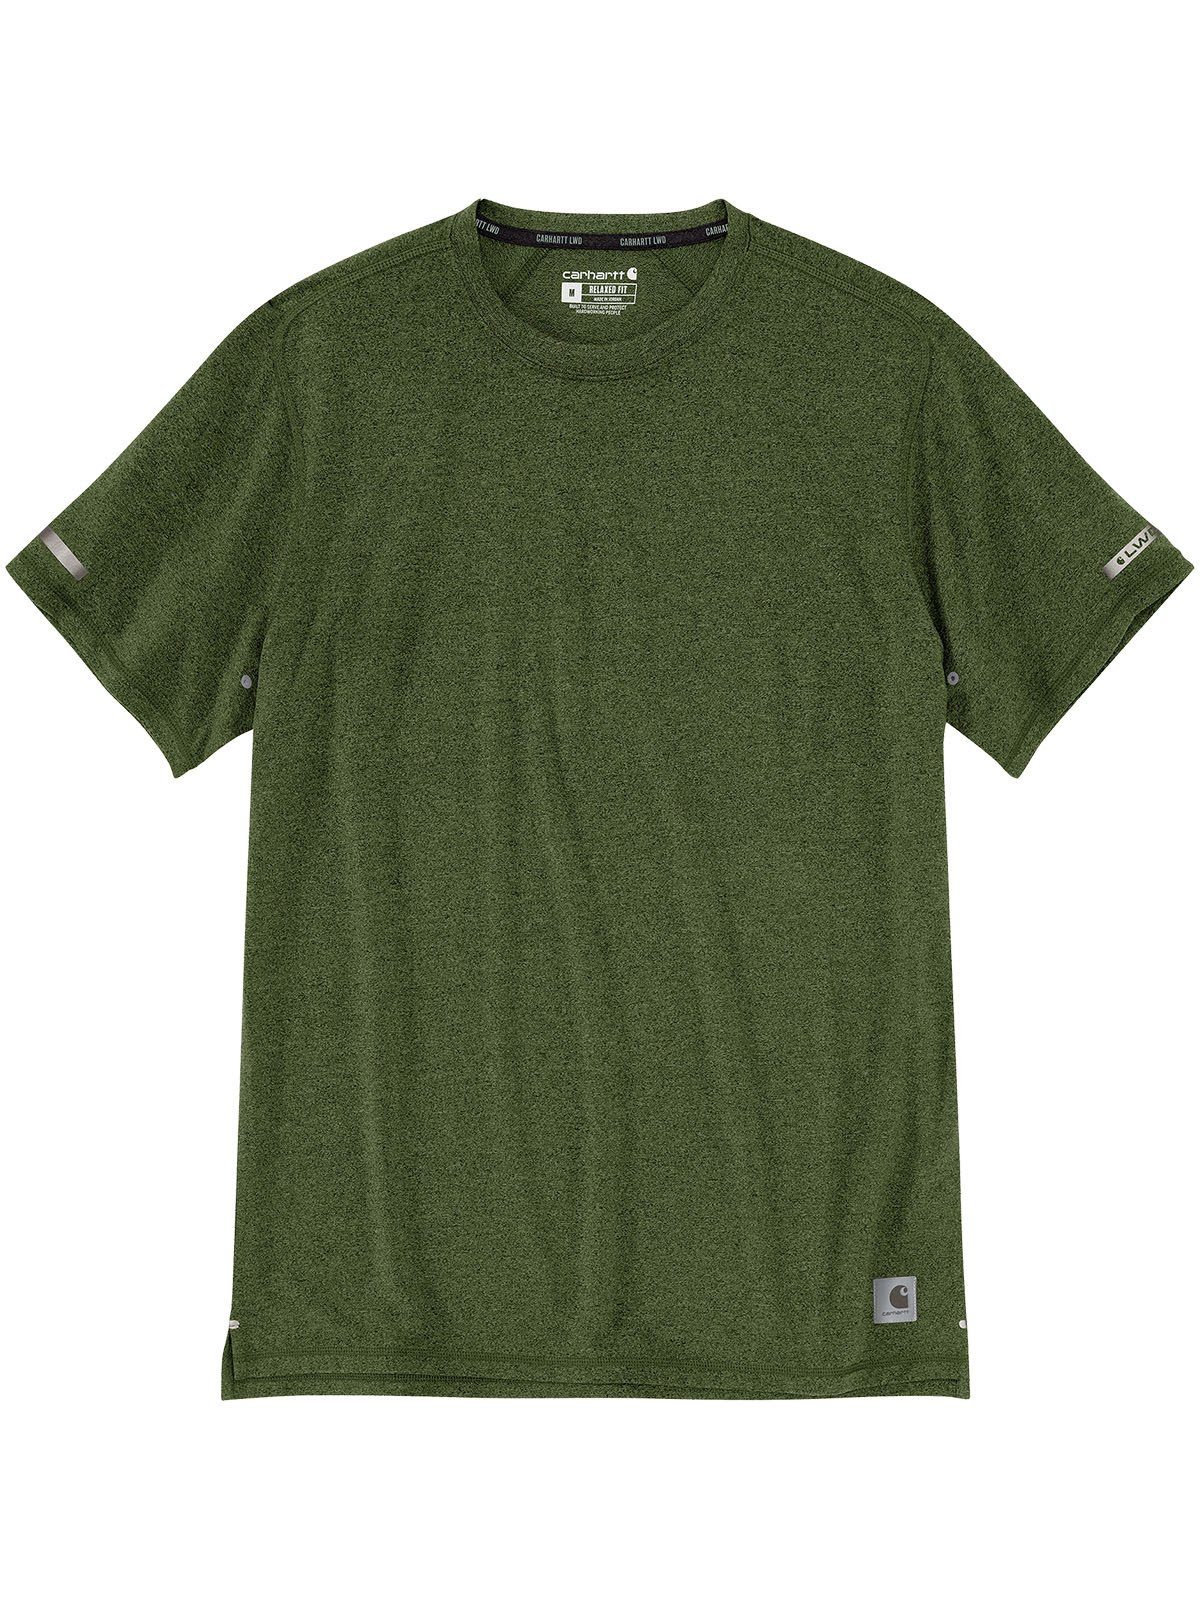 Carhartt T-Shirt 105858-GD4 Carhartt Relaxedfit